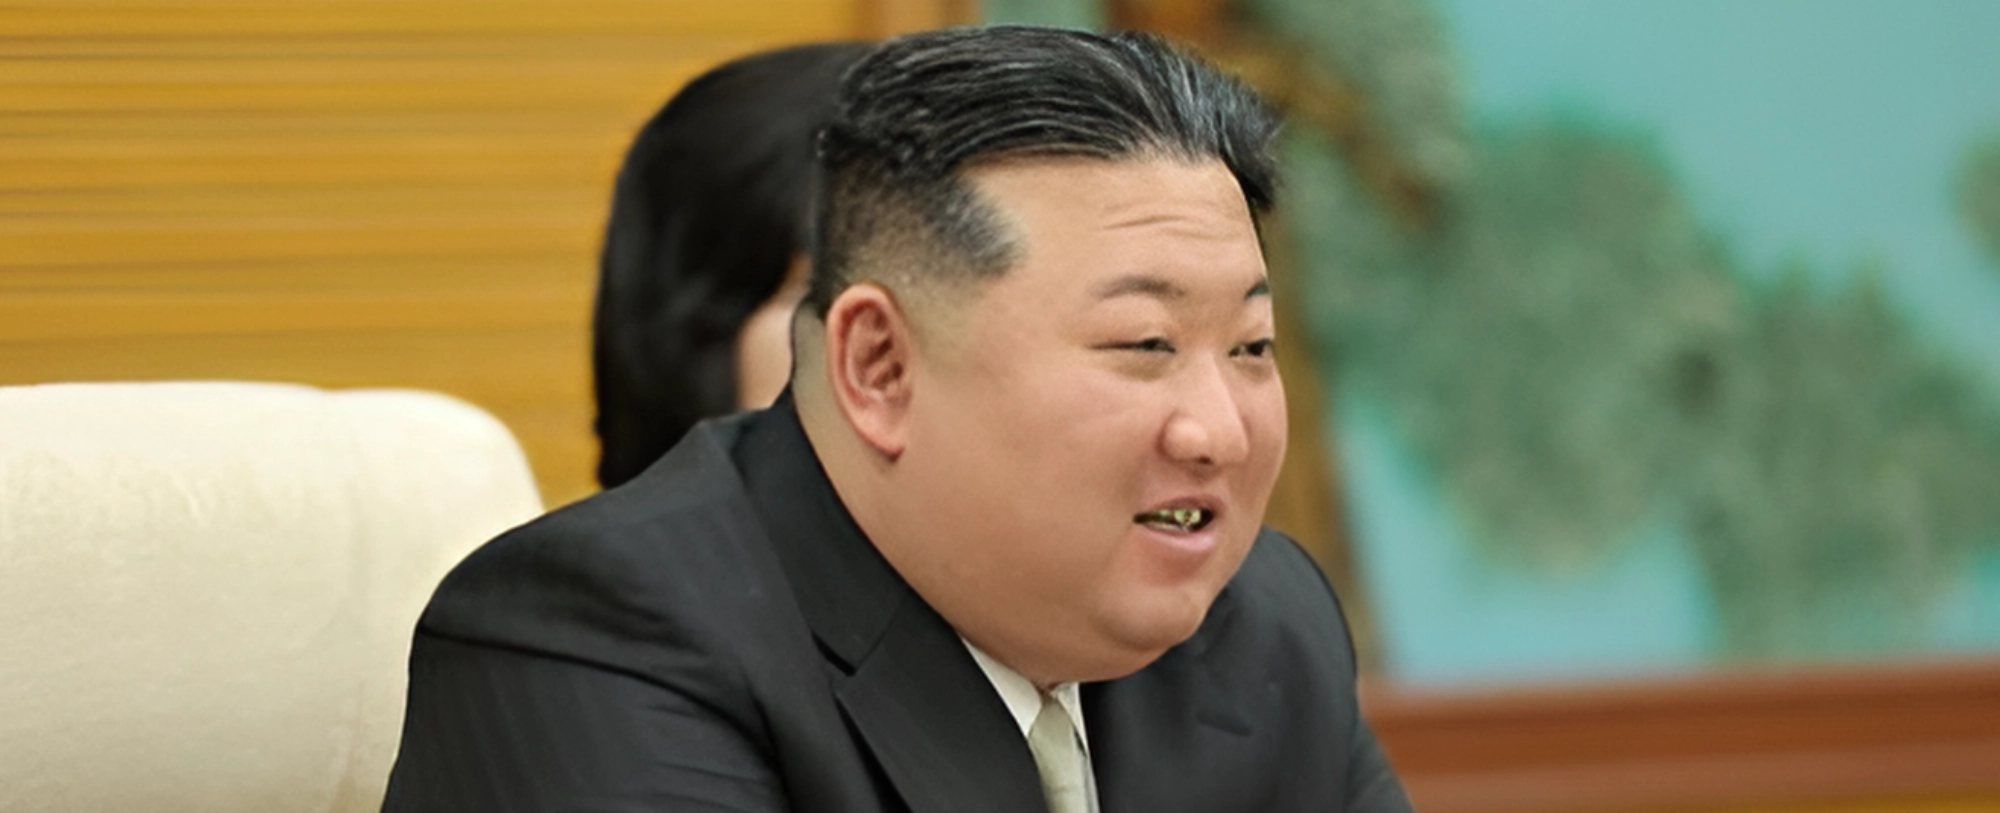 [뉴스숏]남들 눈 피해 돈 받고 애니메이션 대신 만들어준 북한 